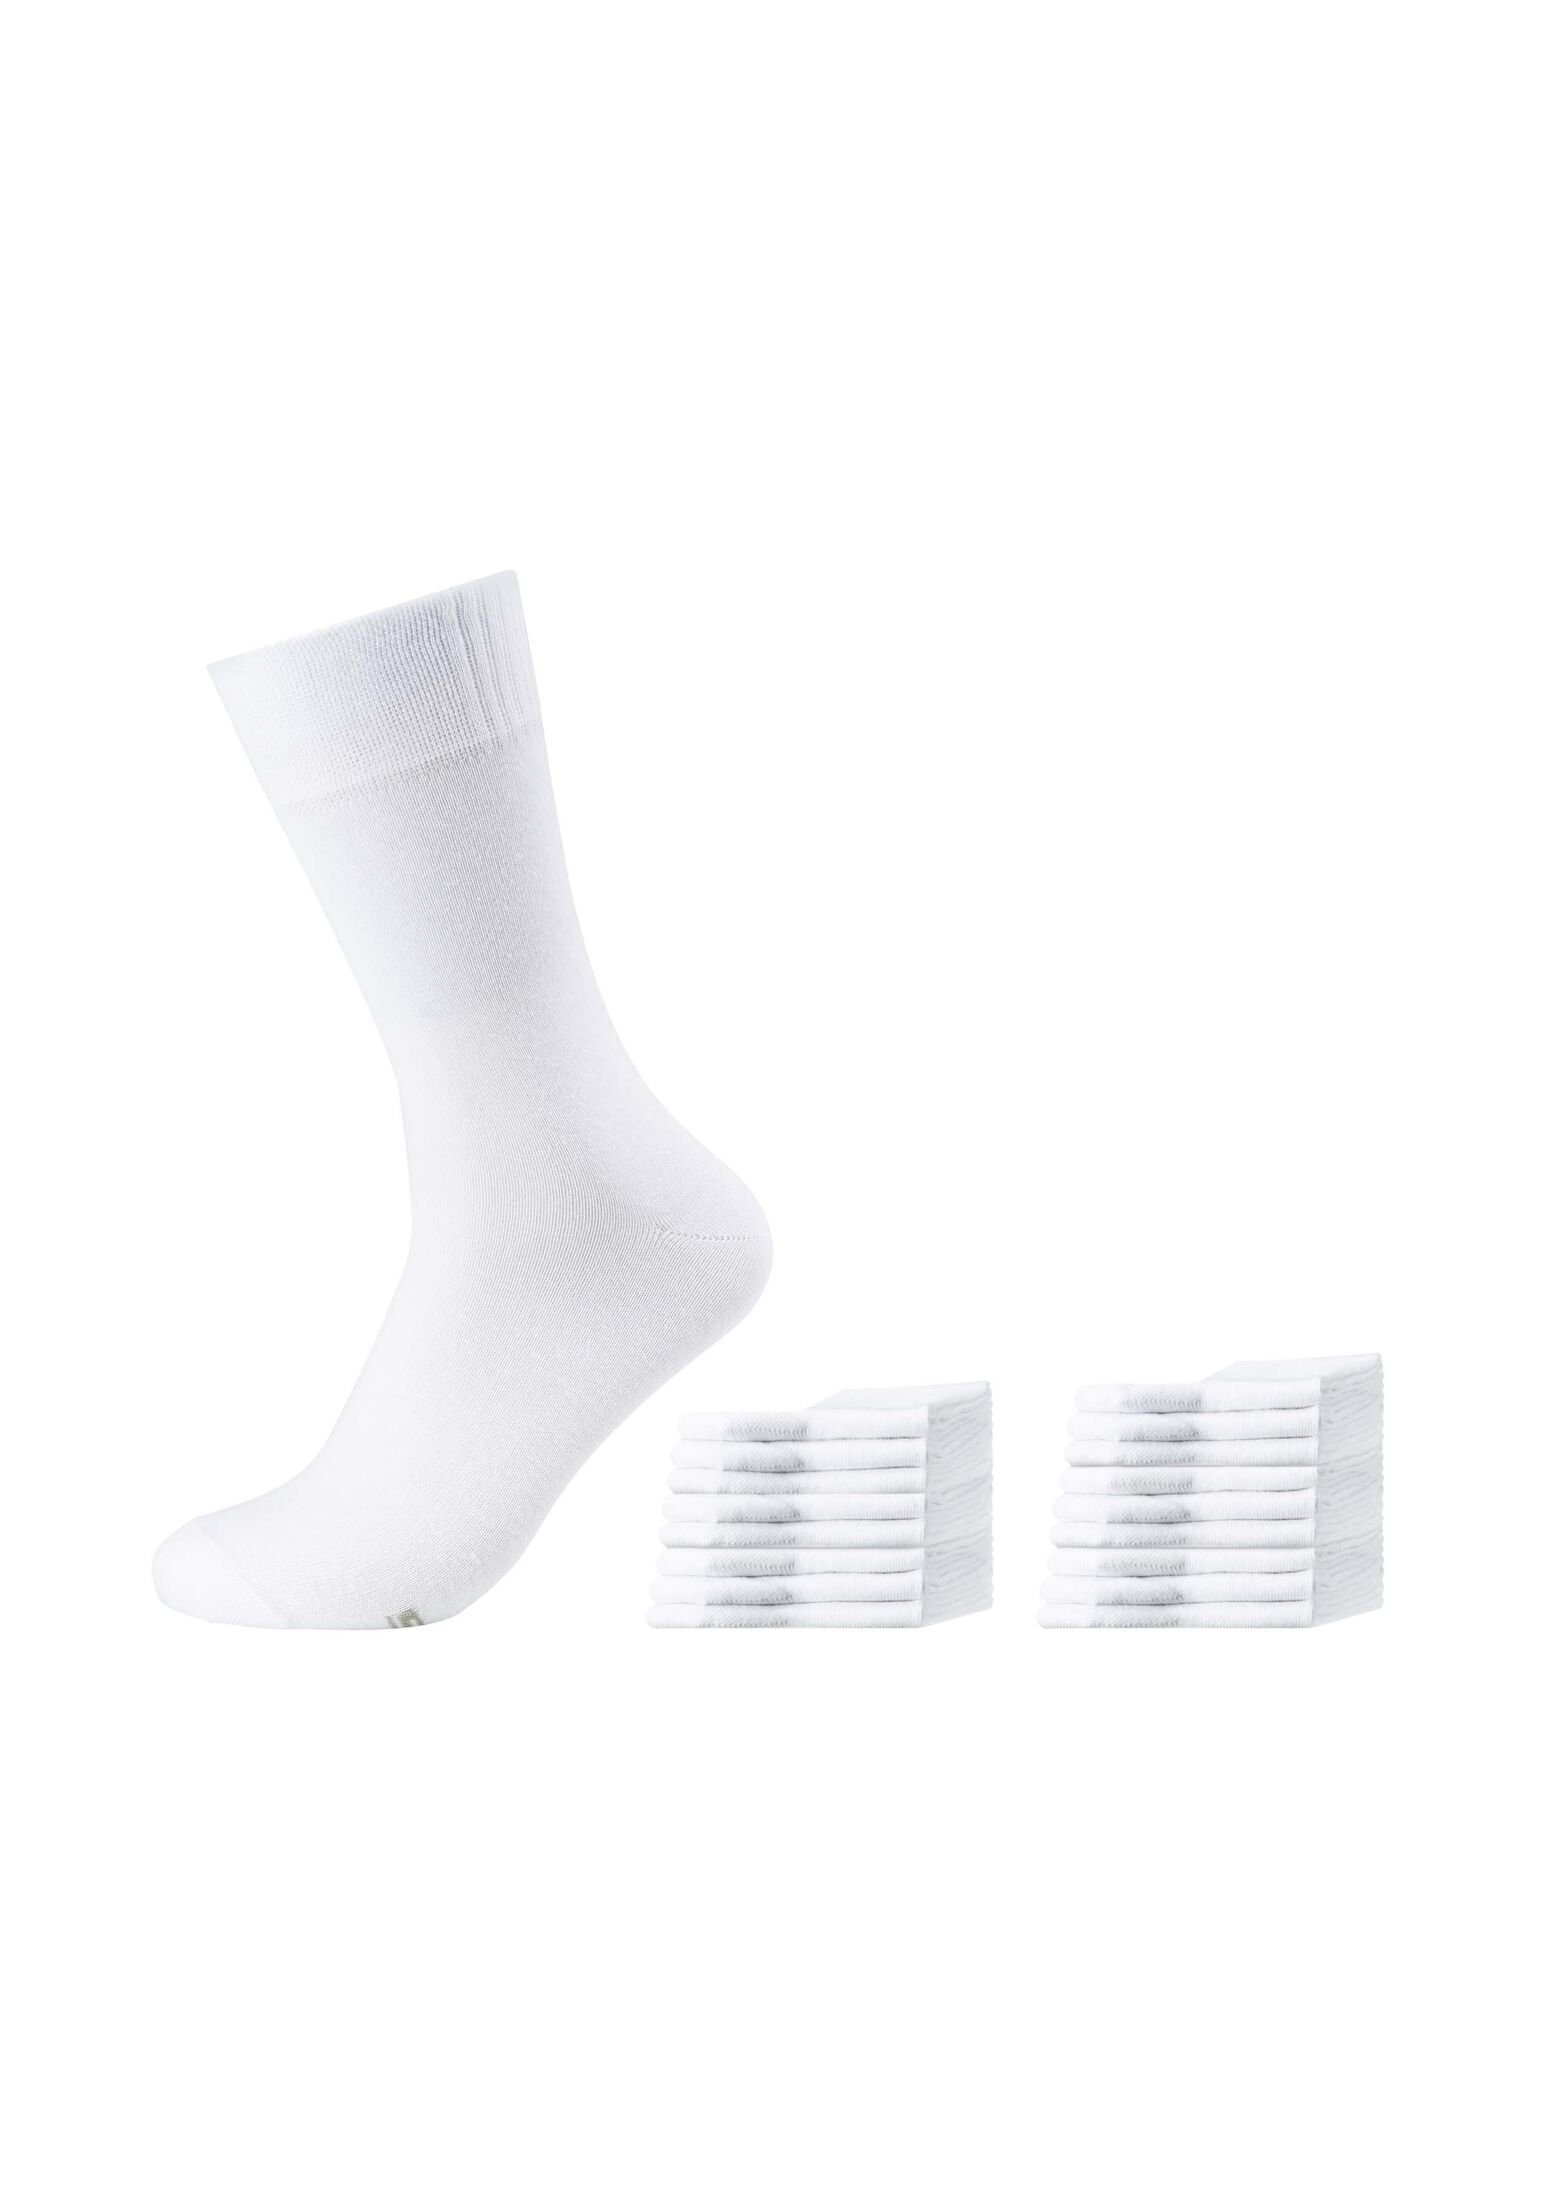 Skechers Socken Socken 18er Pack white | Socken